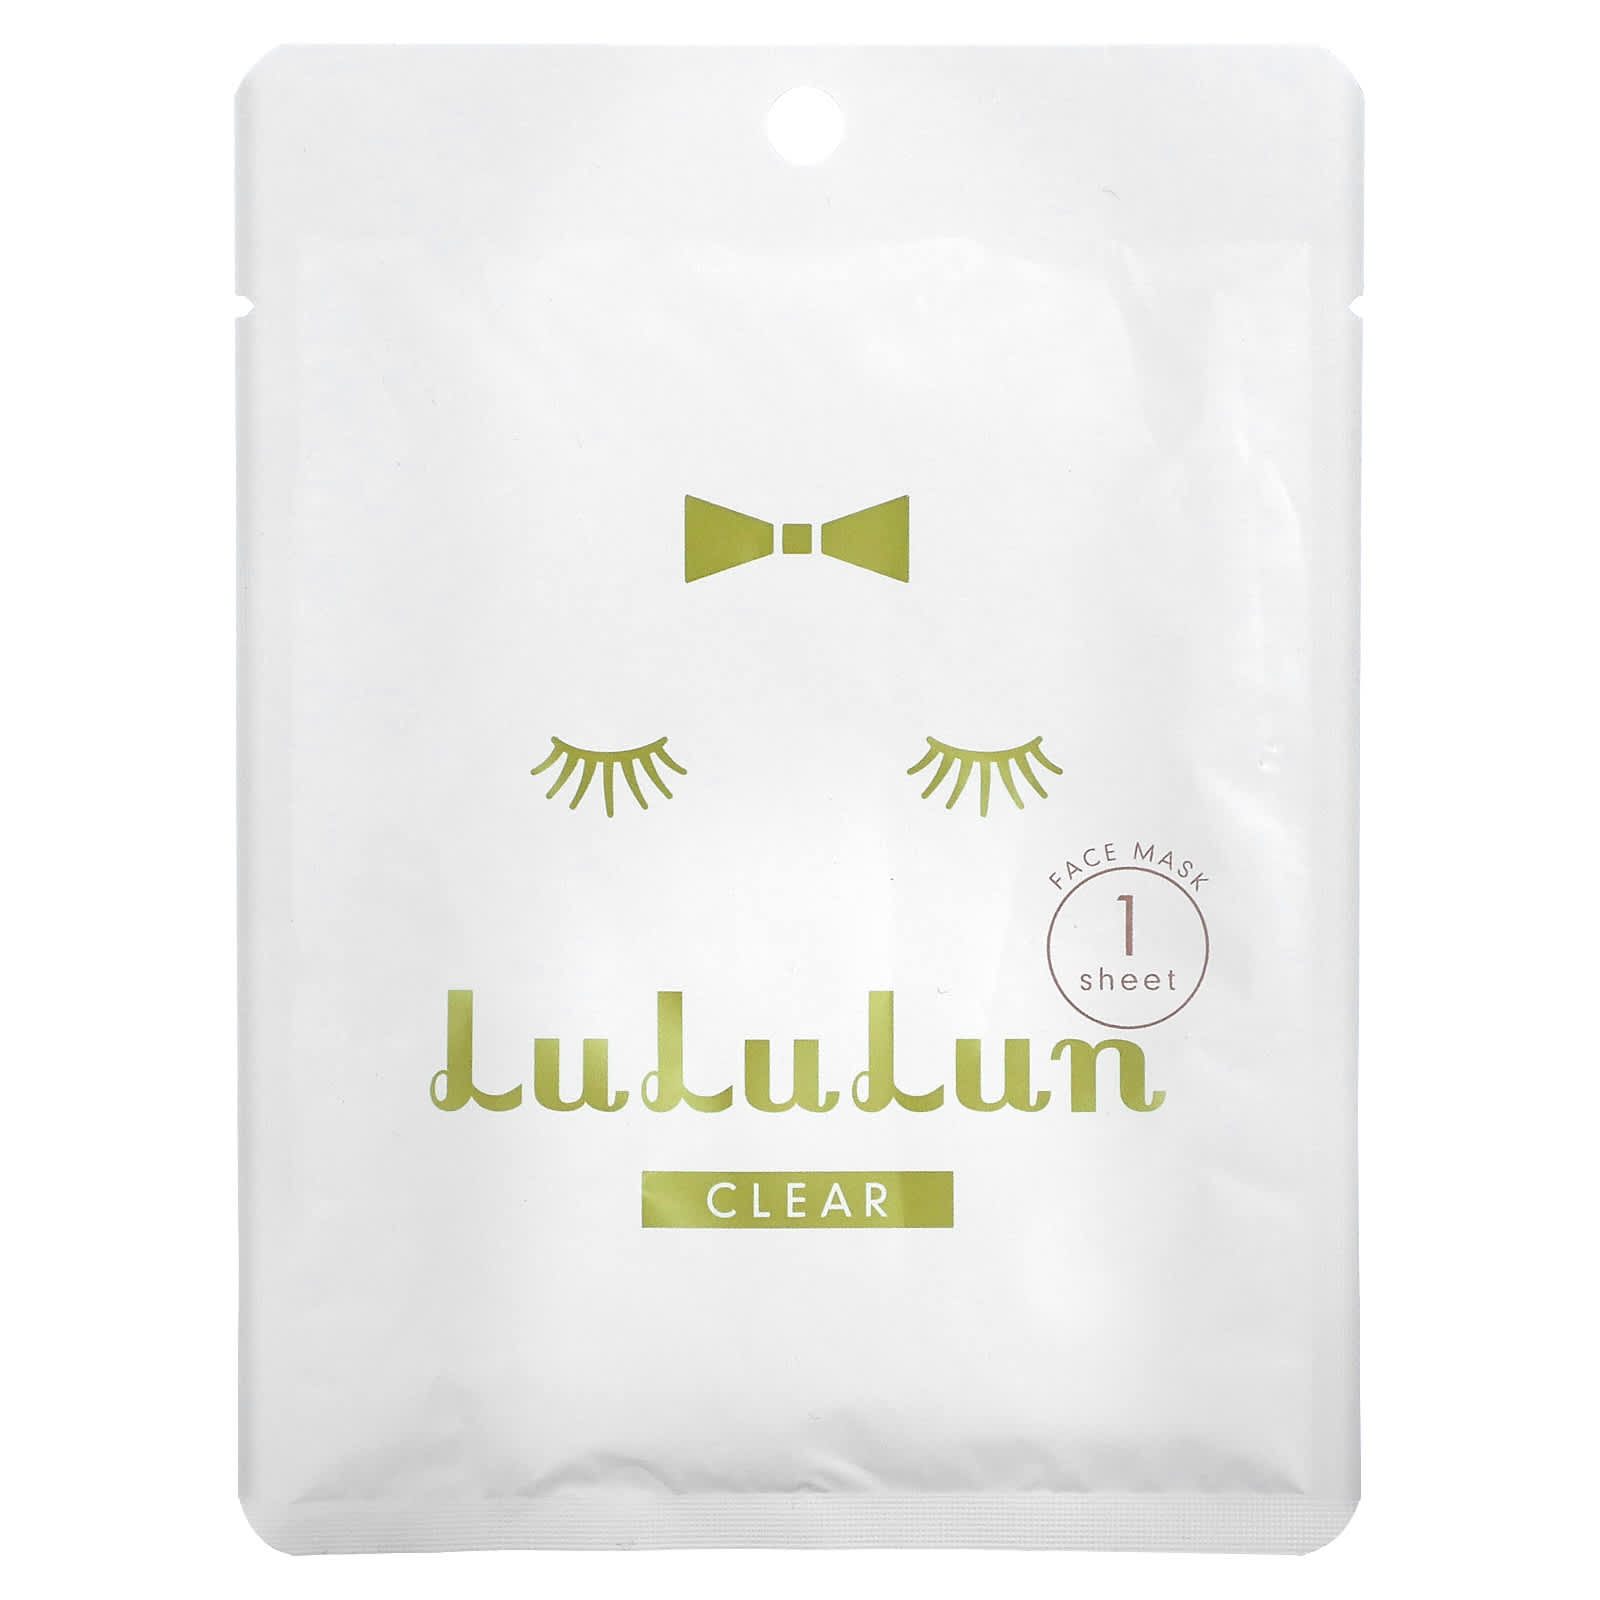 Lululun, Clear, Beauty Face Mask, White 5F, 1 Sheet, 0.74 fl oz (22 ml)